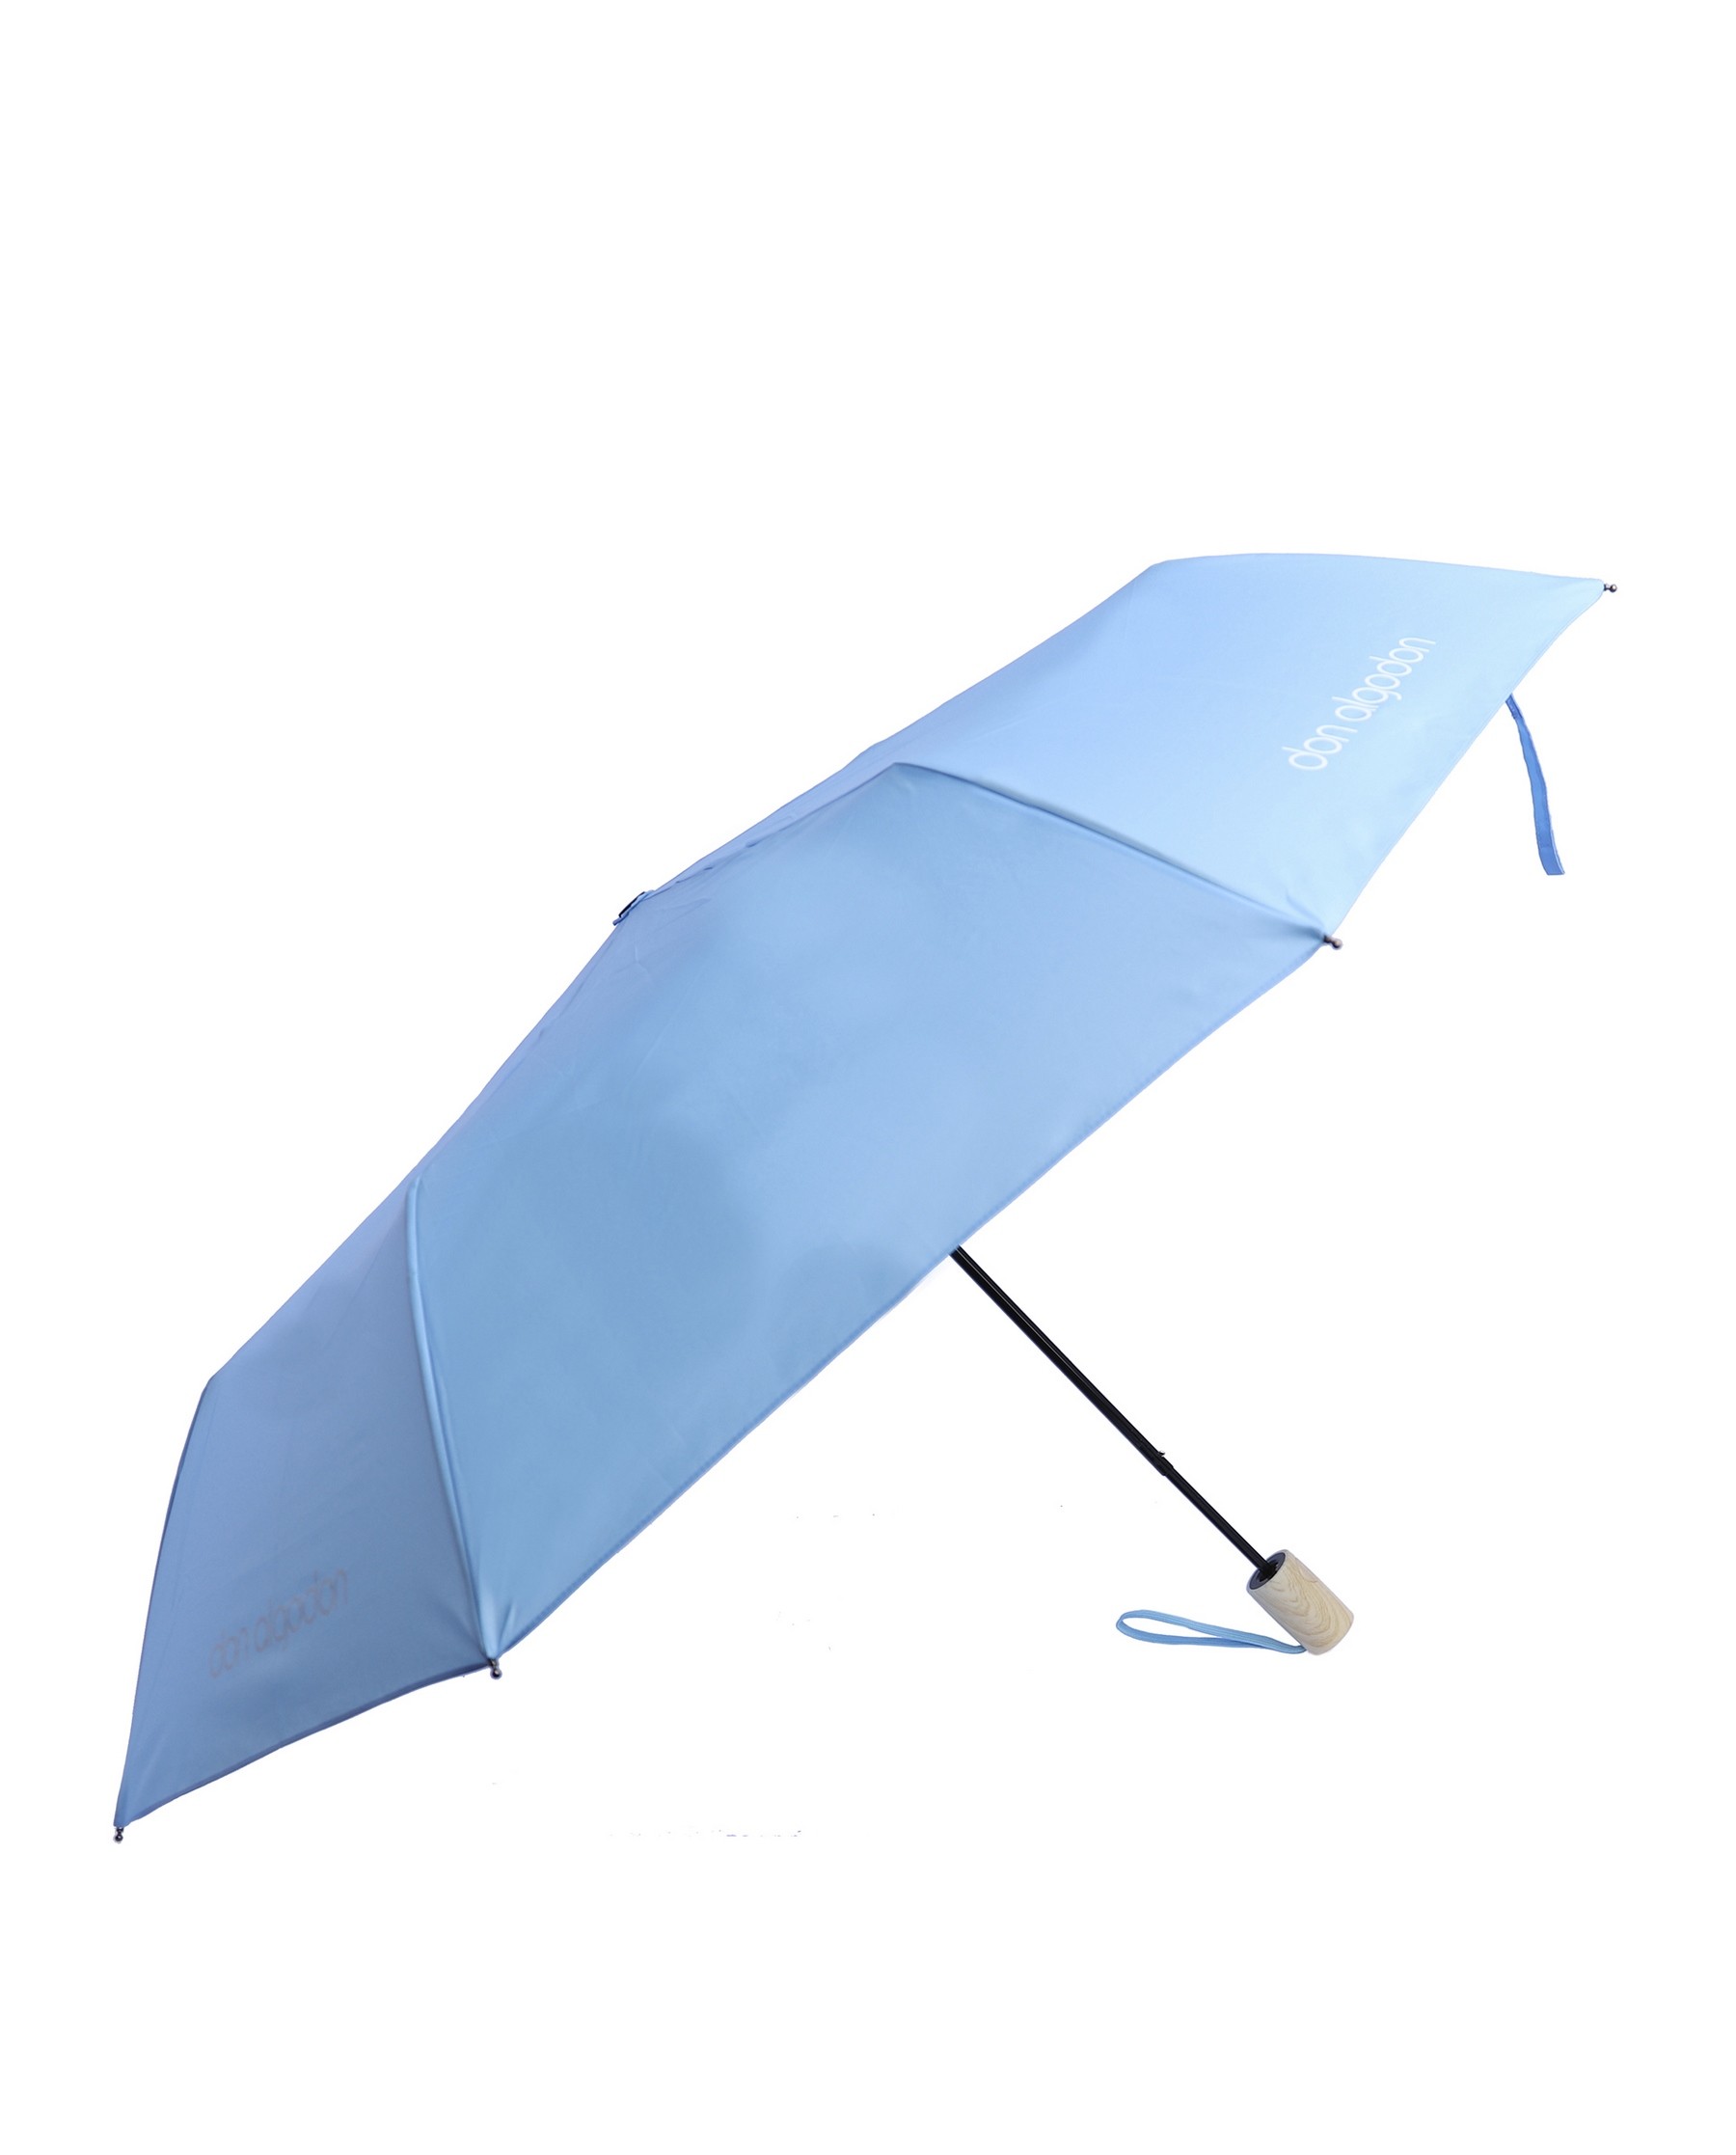 Paraguas plegable en 3 partes